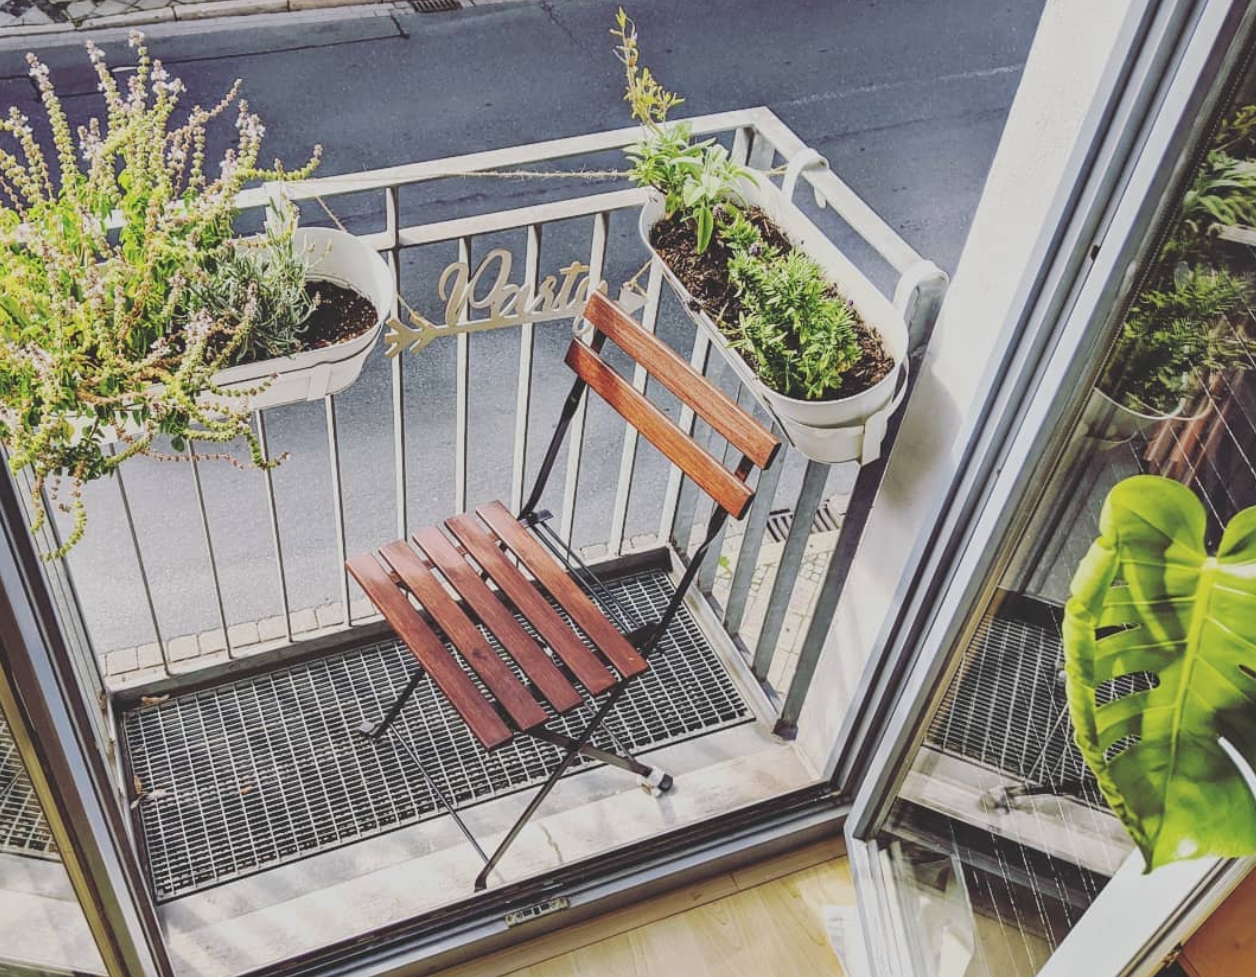 Sommerzeit ist Balkonienzeit. #balkon #balkonien #couchliebt #pflanzenliebe #eintraumwohnung